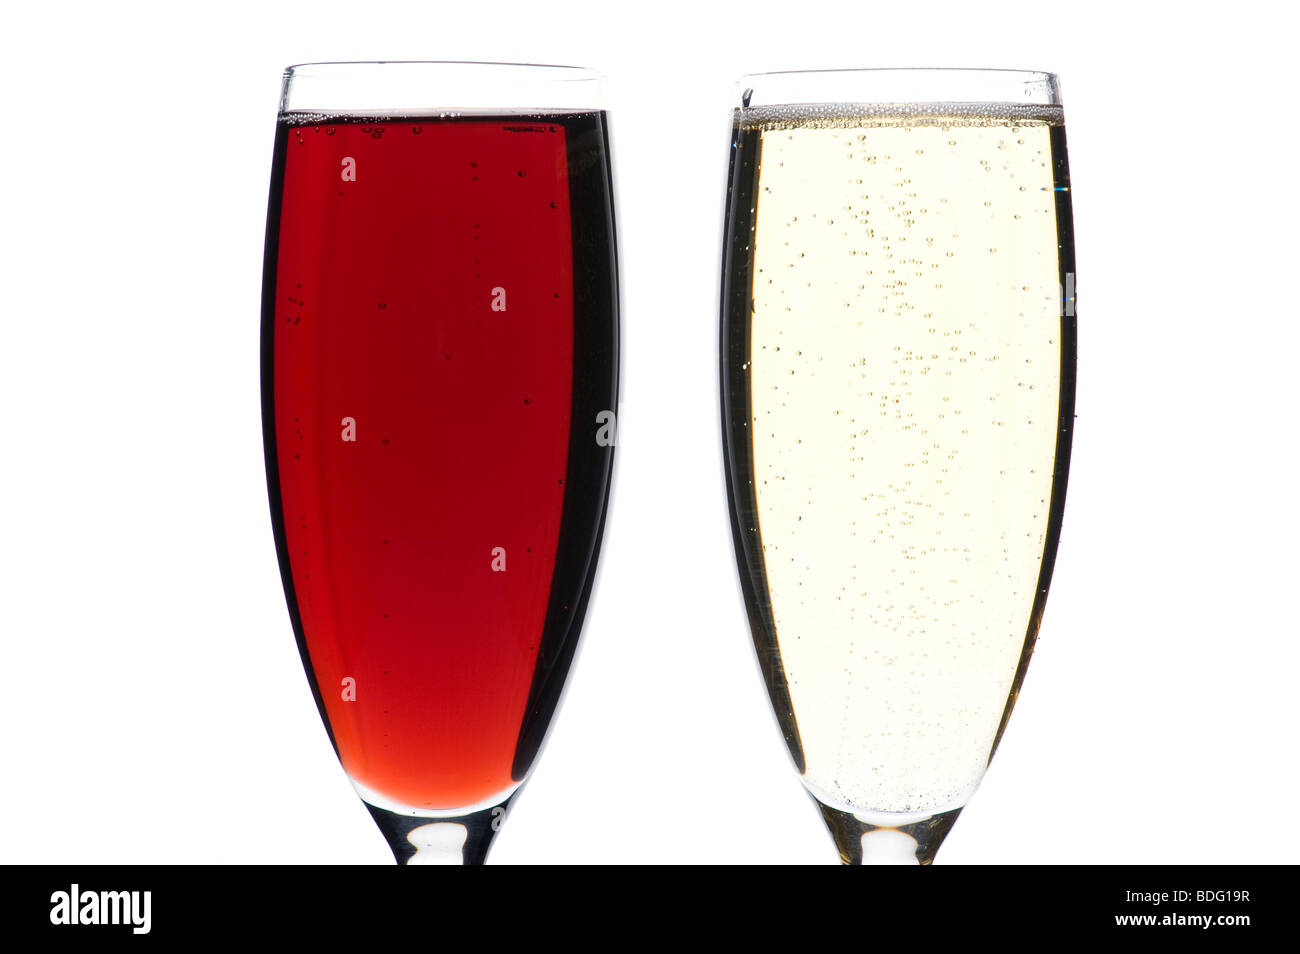 Objet sur blanc - verres de champagne close up Banque D'Images